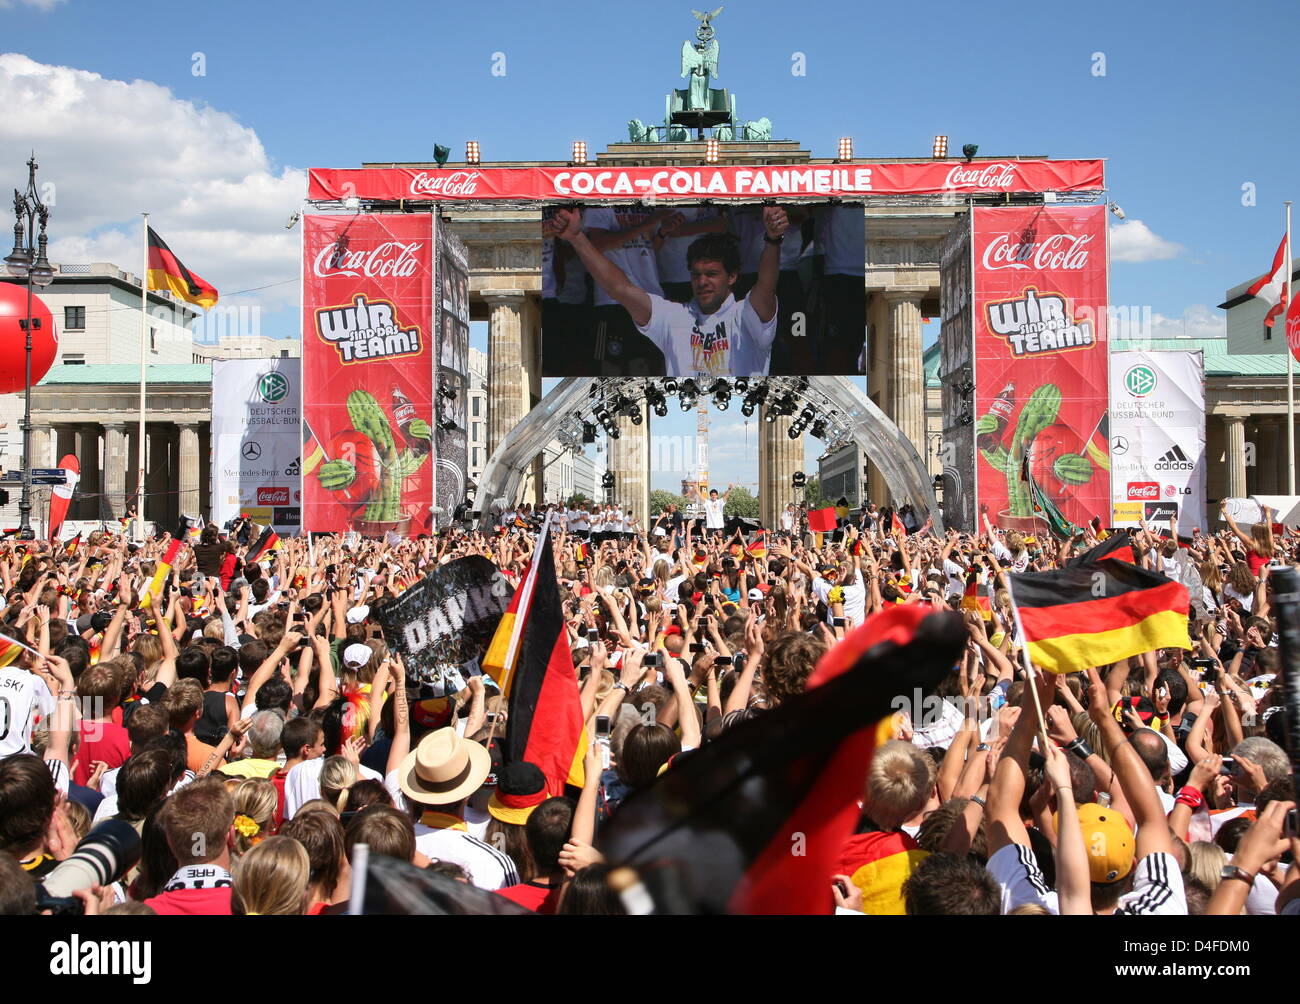 Michael Ballack, Kapitän der deutschen Fußball-Nationalmannschaft, feiert am Montag (30.06.2008) auf der Fanmeile in Berlin mit den Fans. Am Abend zuvor unterlag Deutschland im Finale der Europameisterschaft dem spanischen Team mit 0:1. Foto: Rainer Jensen dpa/lbn +++###dpa###+++ Stock Photo